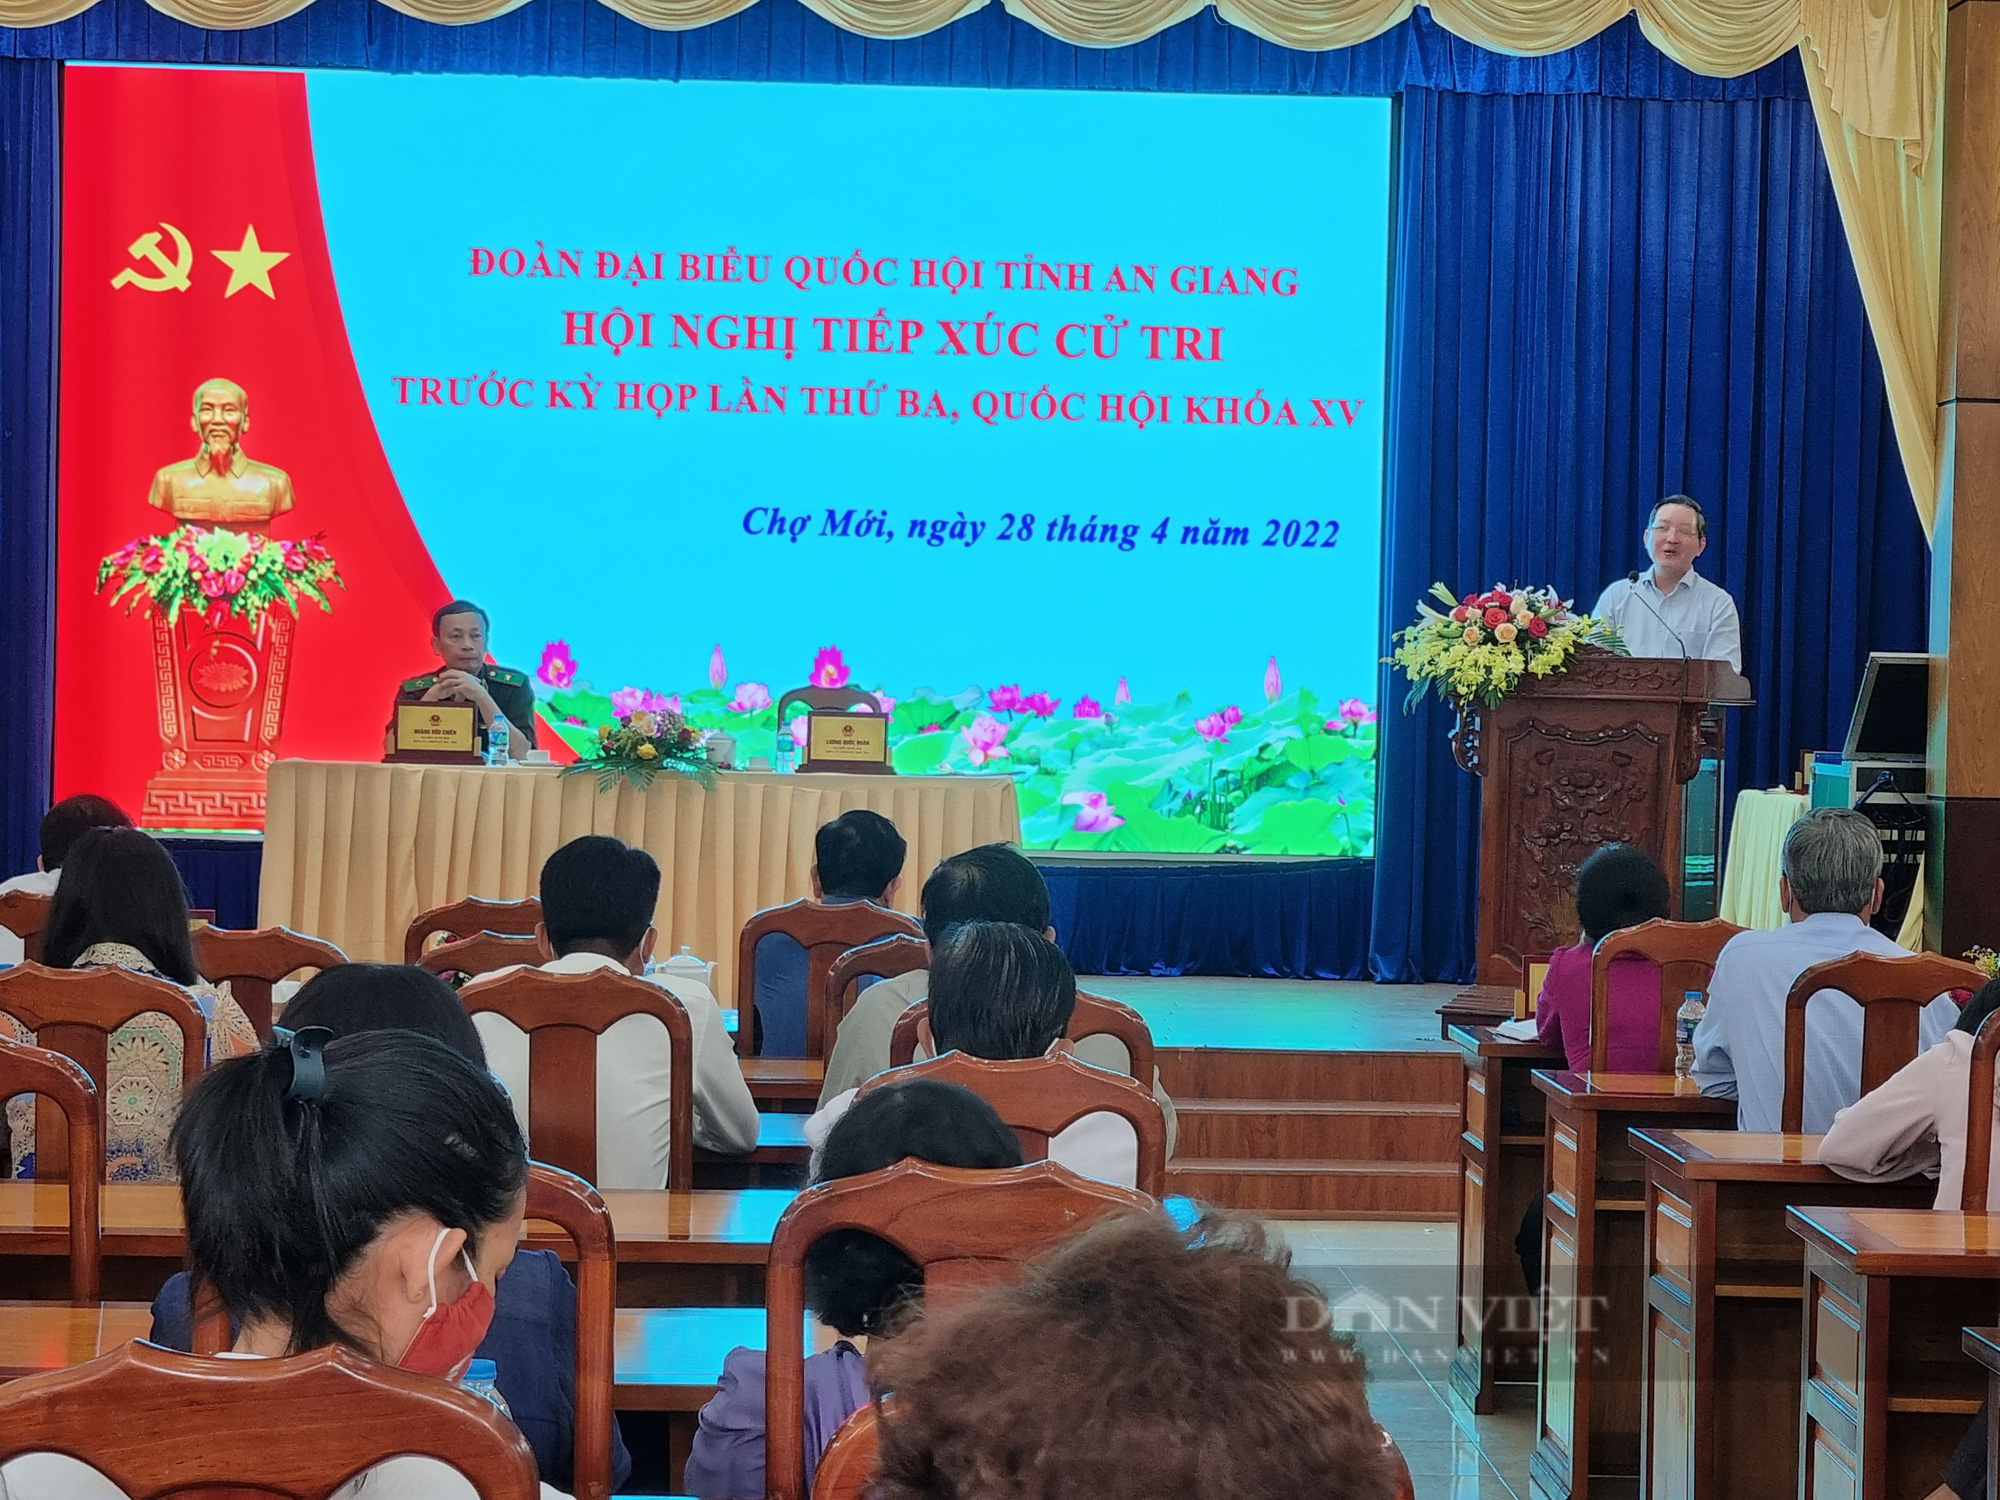 Chủ tịch Hội Nông dân Việt Nam tiếp xúc cử tri tại huyện Chợ Mới, tỉnh An Giang - Ảnh 1.